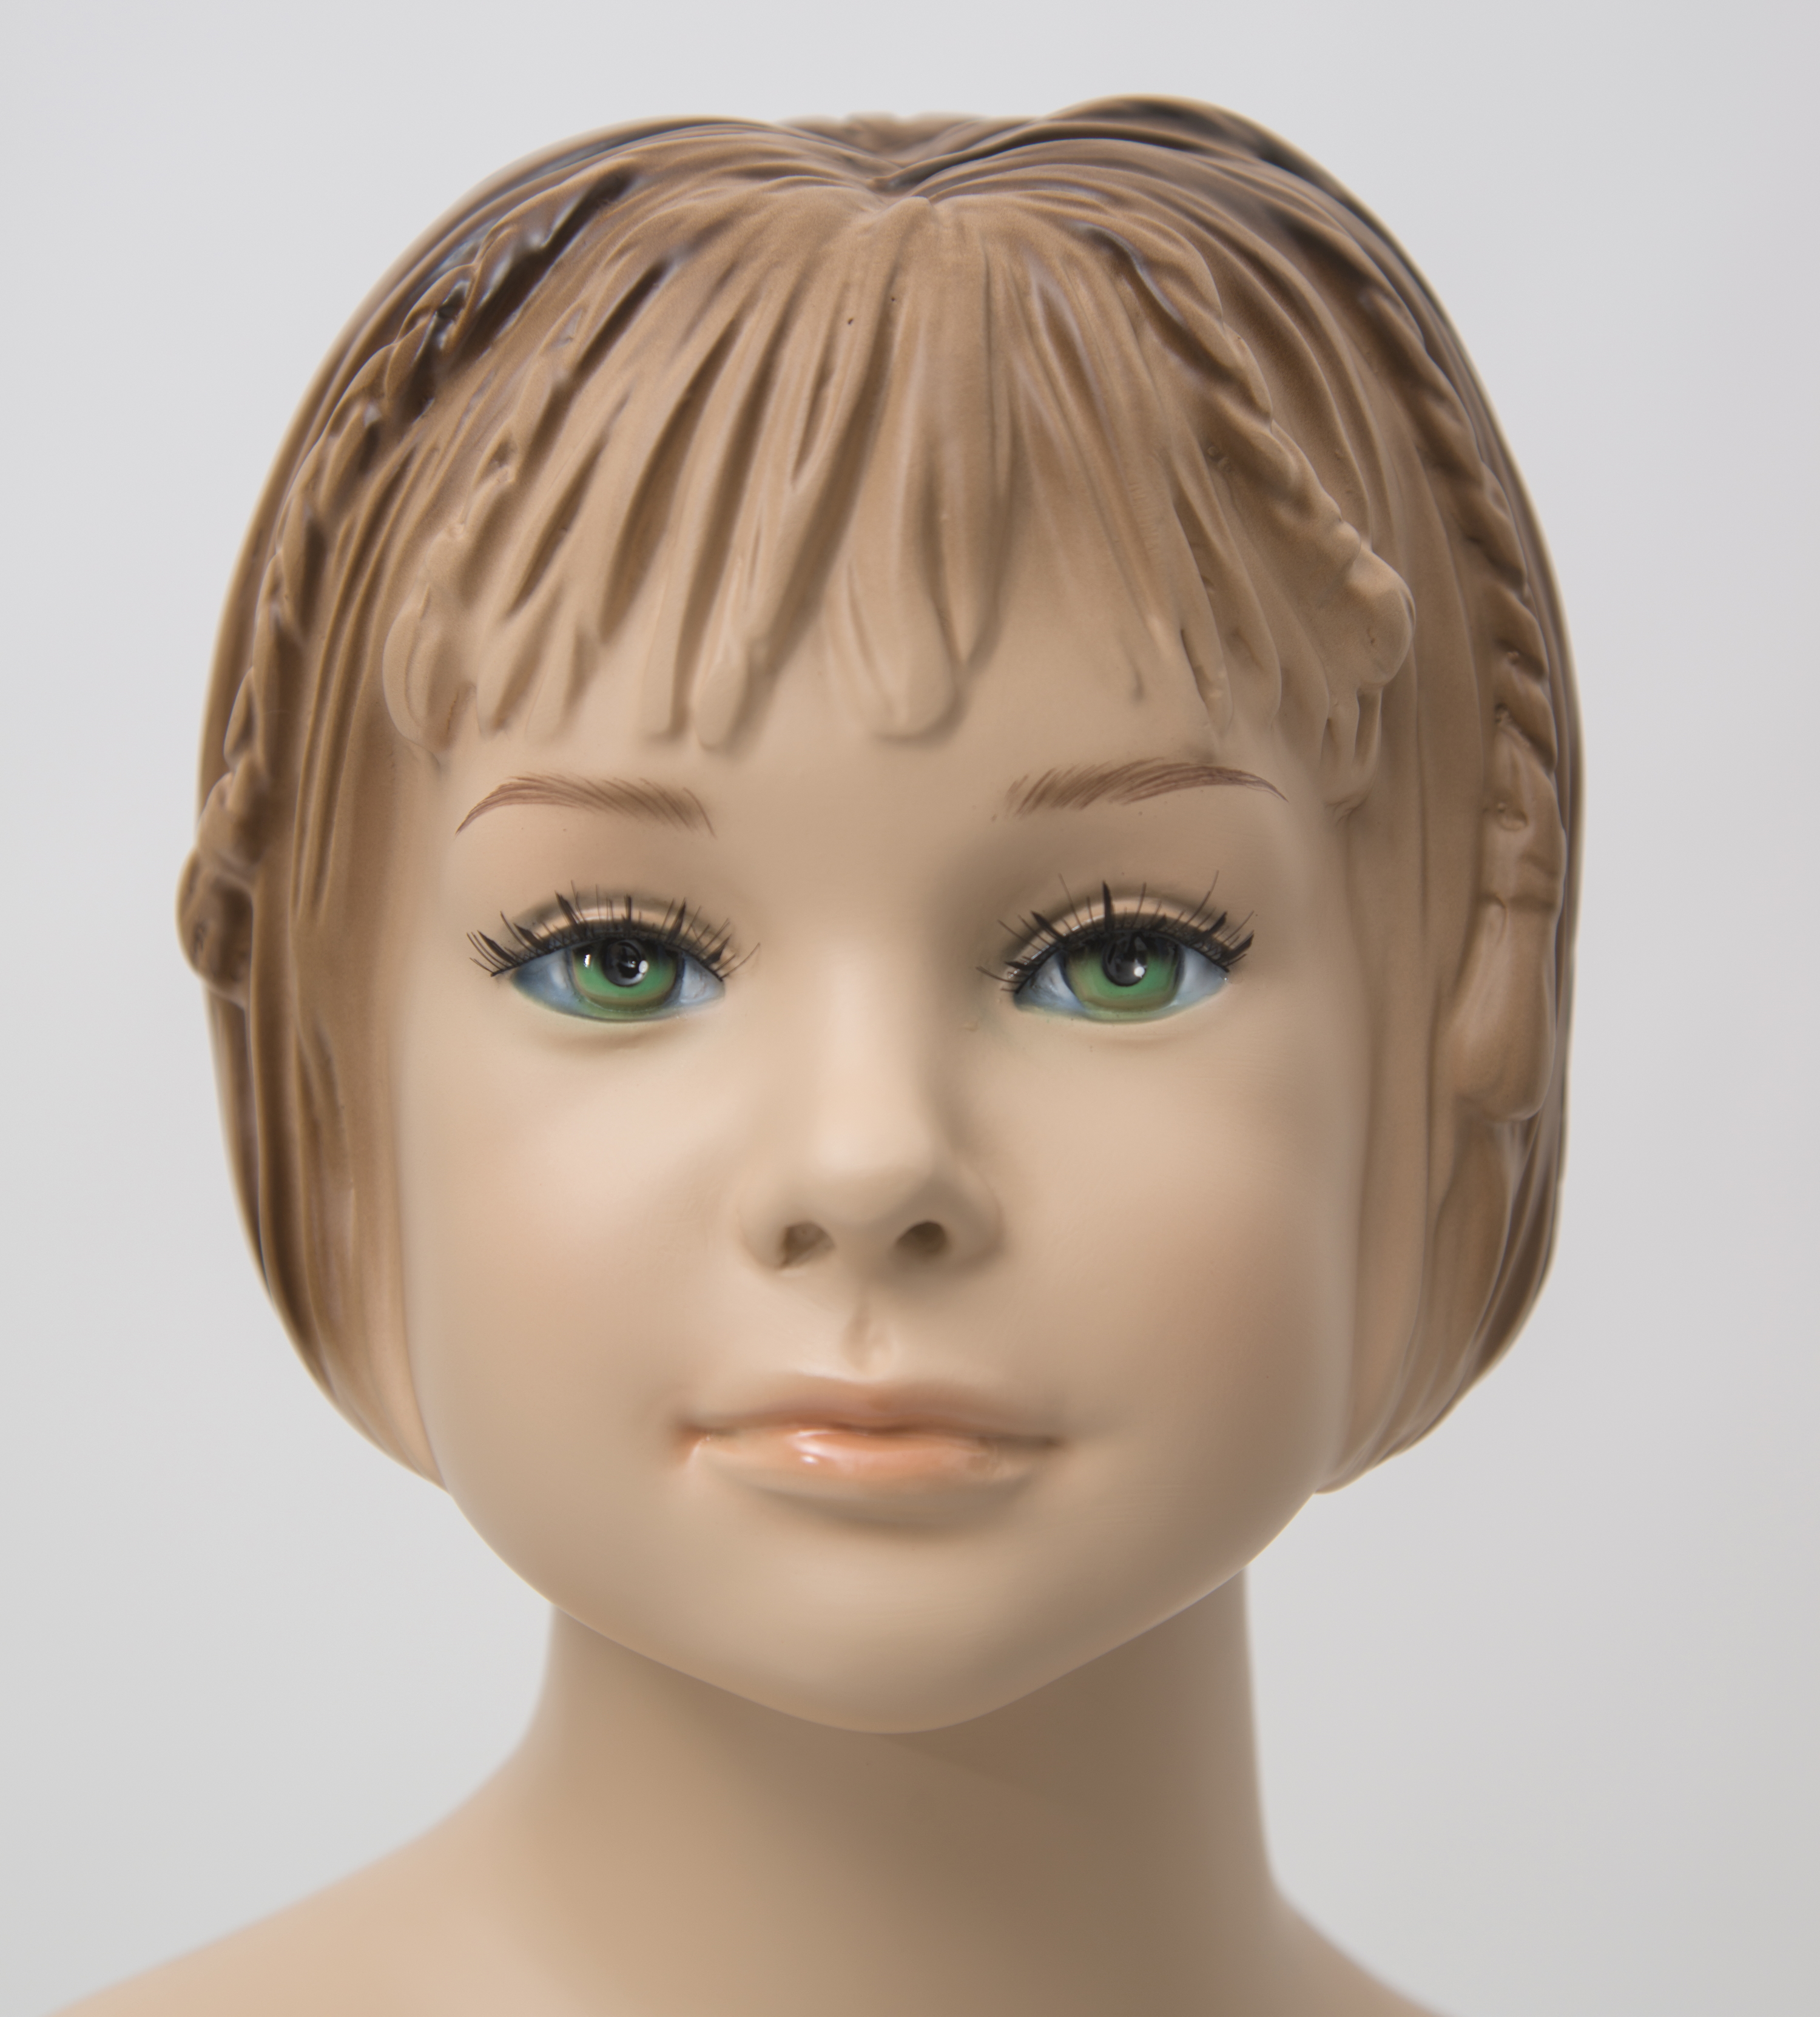 Schaufensterfigur EVO Kind, hautfarbe, mit modelliertem Haar, aus Fiberglas, inkl. Glas-Standplatte 